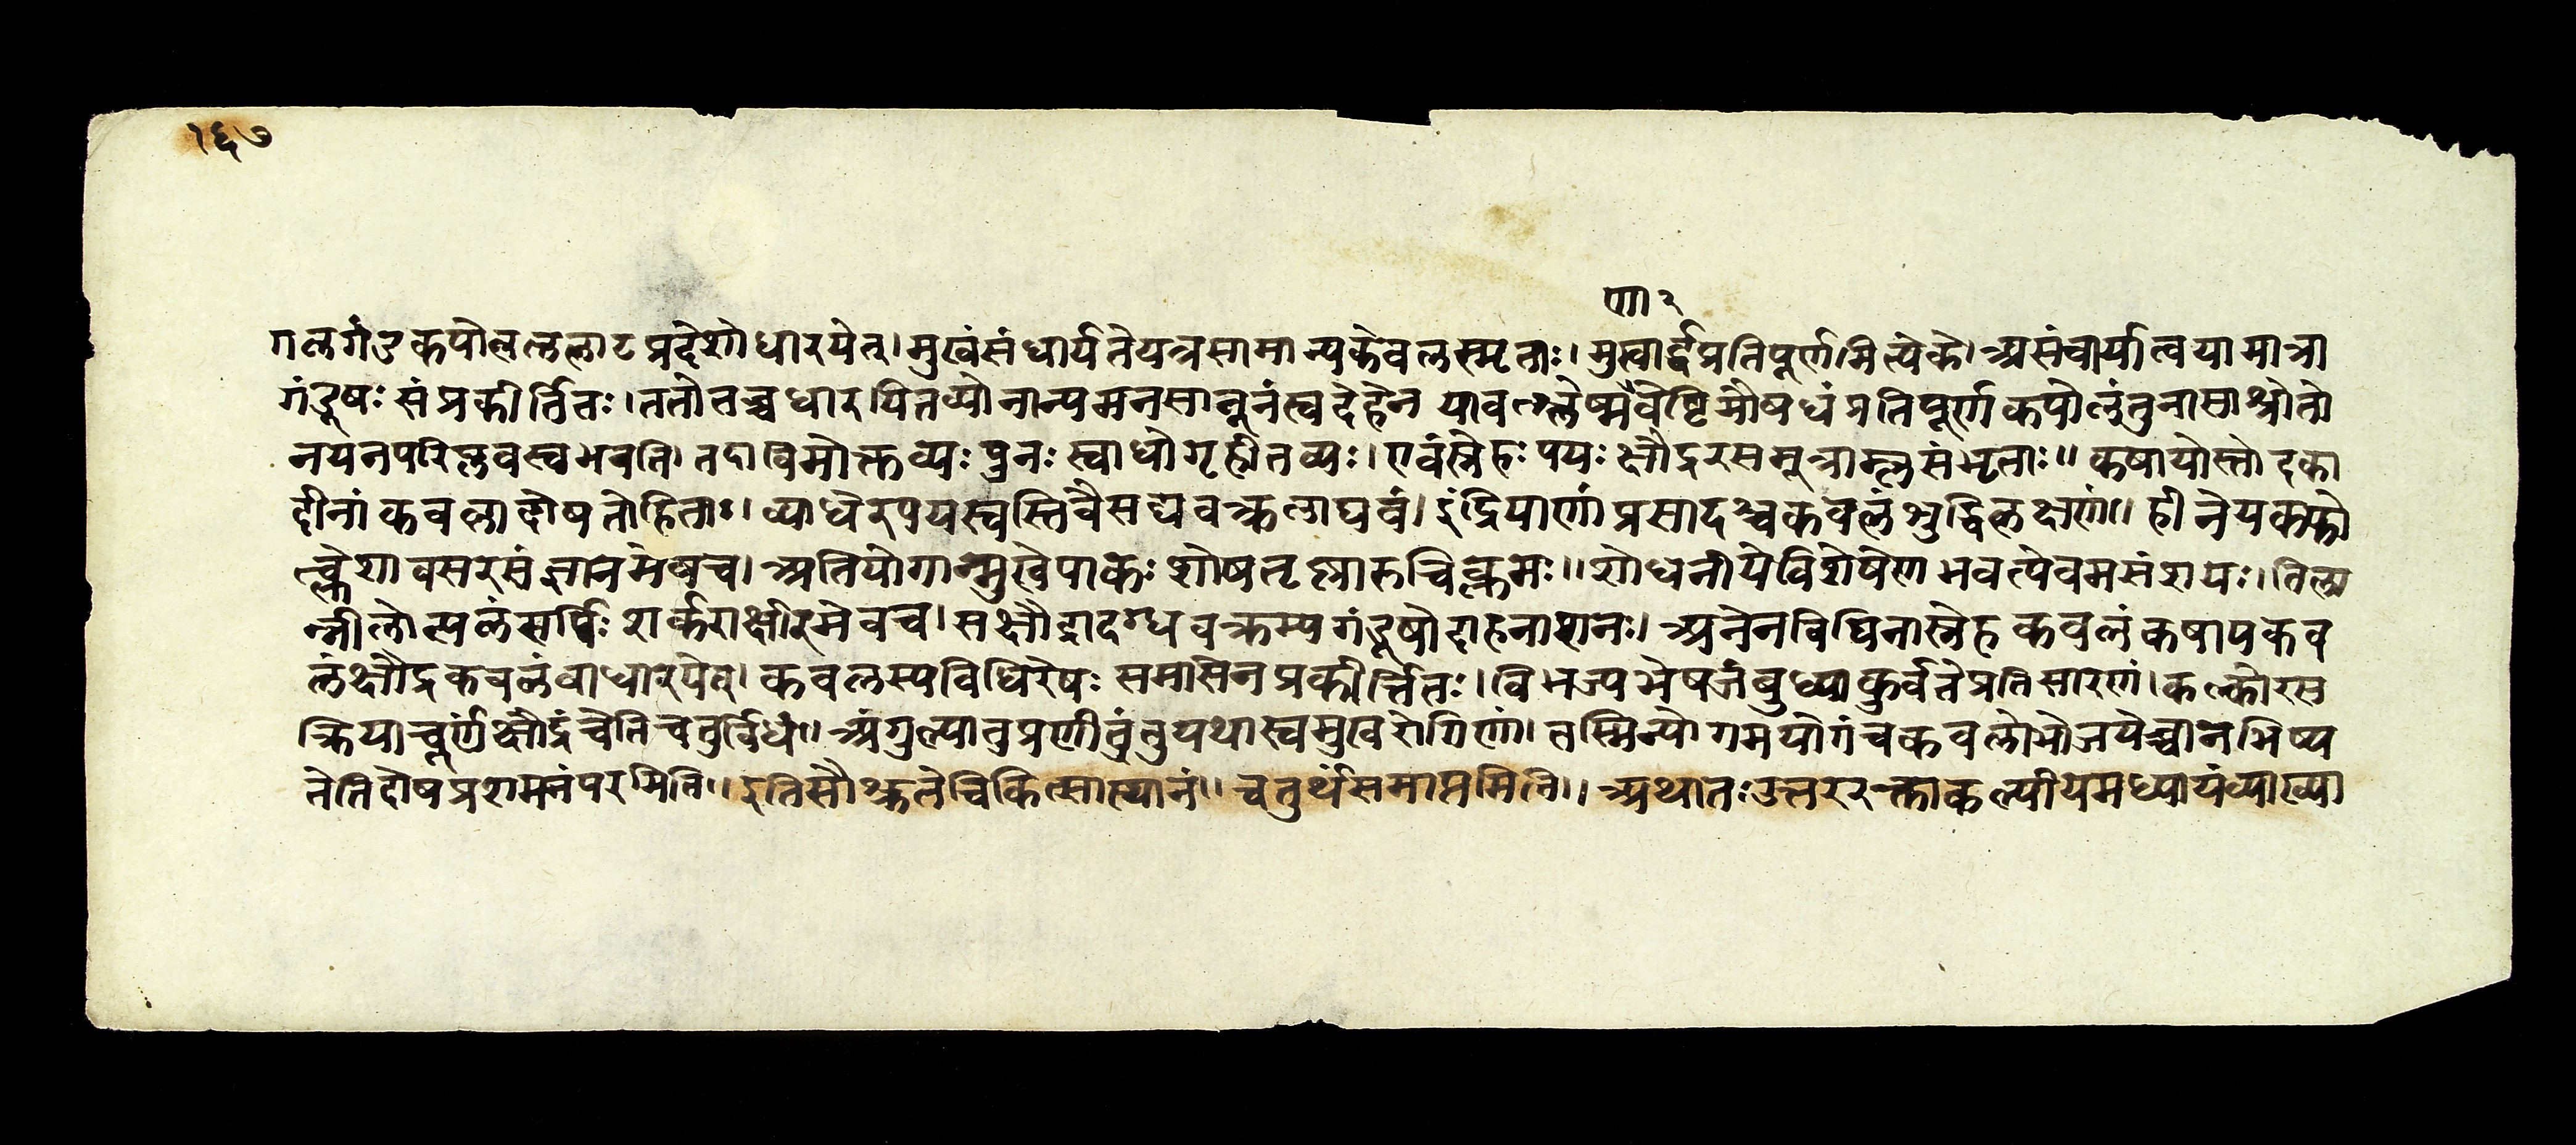 sushruta samhita pdf hindi download